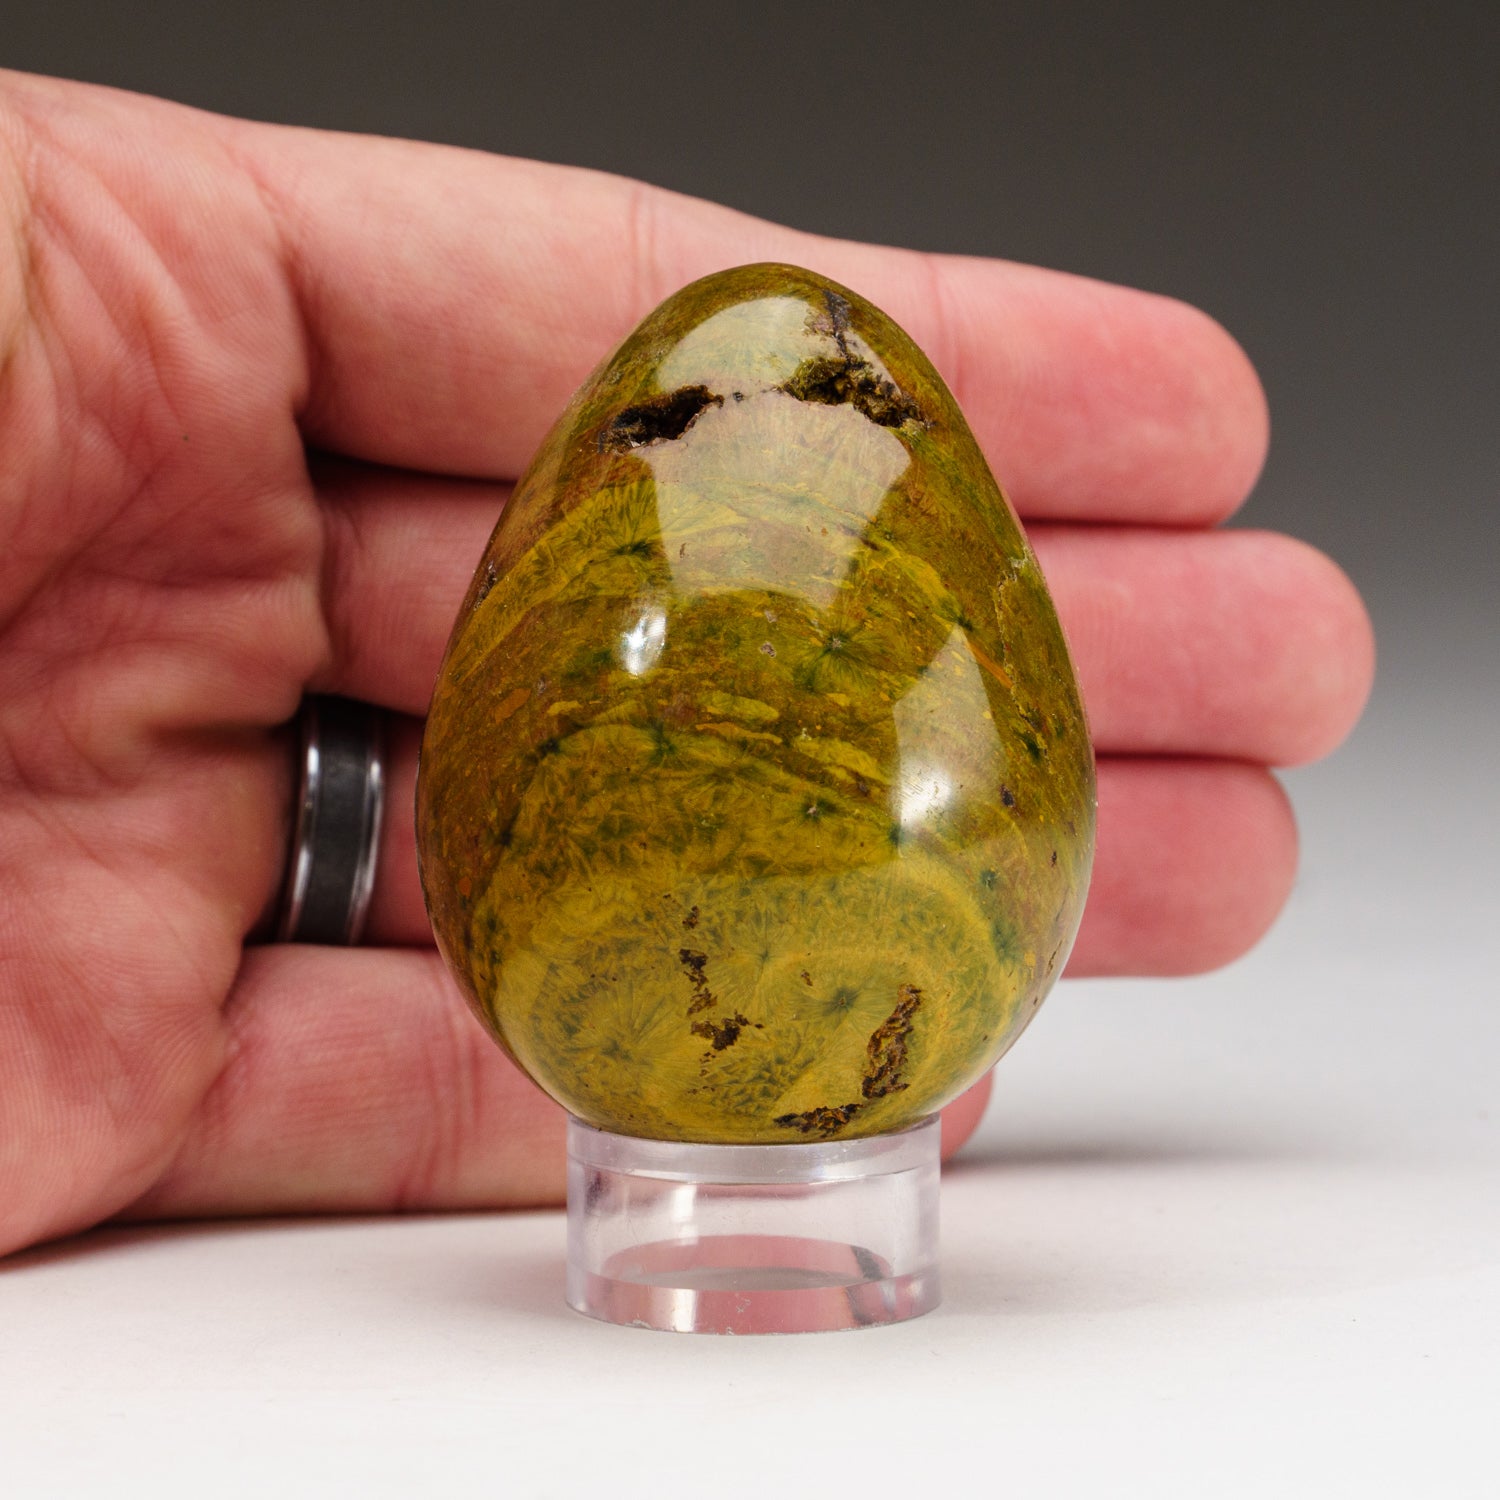 Genuine Polished Ocean Jasper Egg (164 grams)